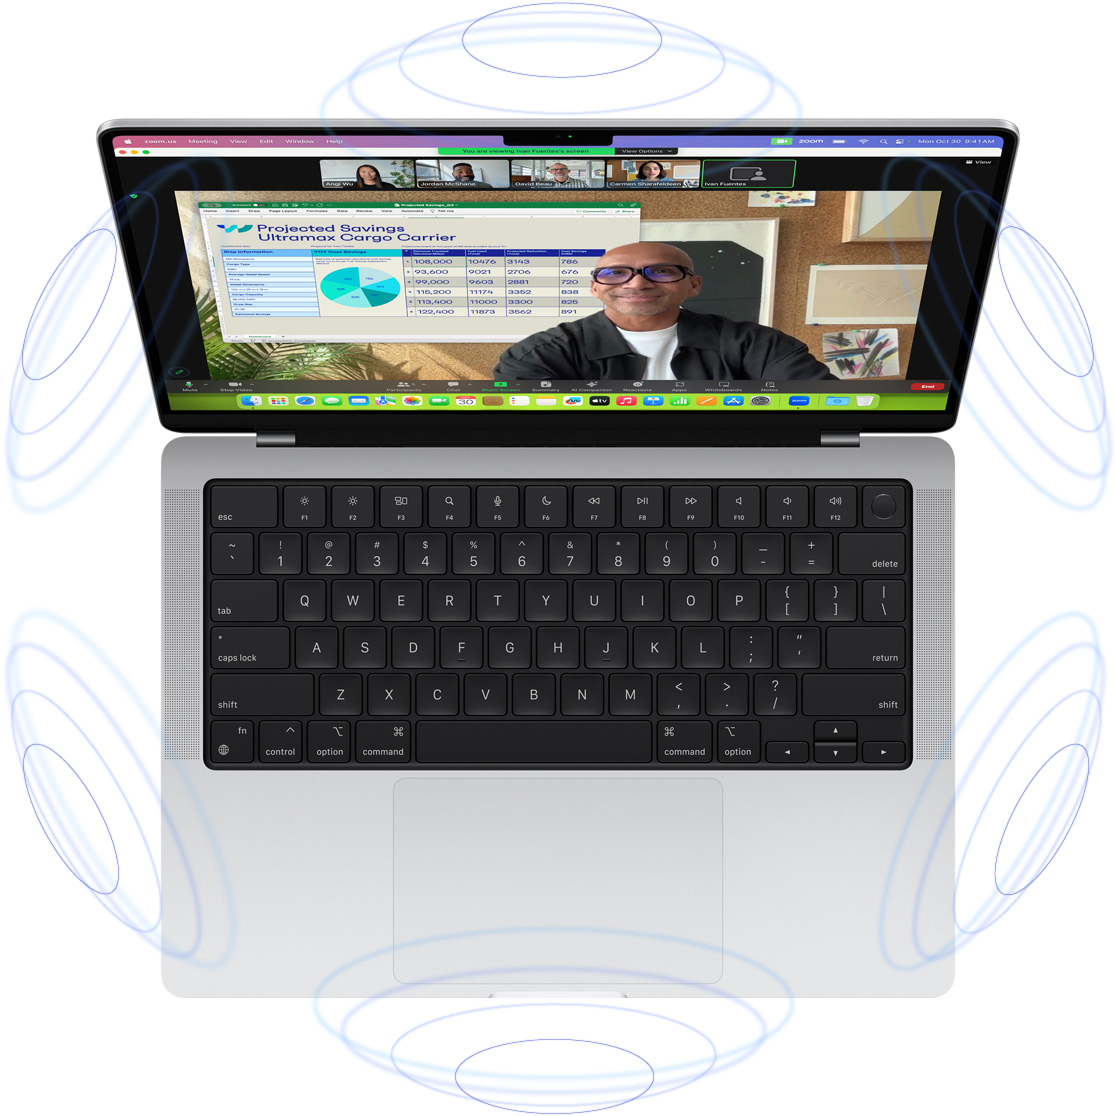 Videopoziv putem FaceTimea na MacBooku Pro, uz ilustracije plavih krugova koji predstavljaju 3D dojam koji ostavlja Prostorni zvuk